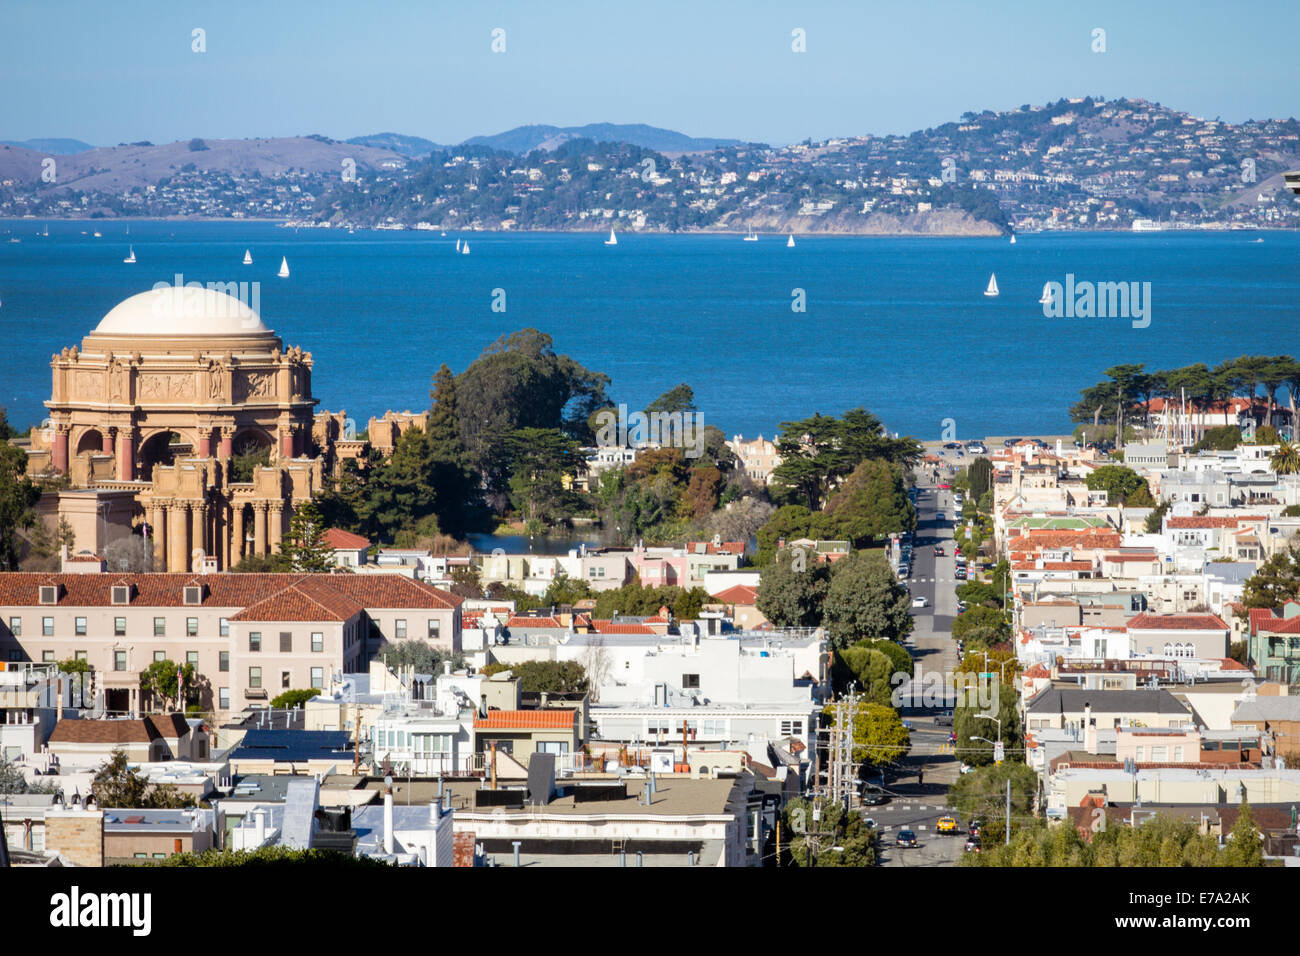 Donnant sur San Francisco marina district avec Palais des Beaux-arts et colline villes à travers la baie de San Francisco Banque D'Images